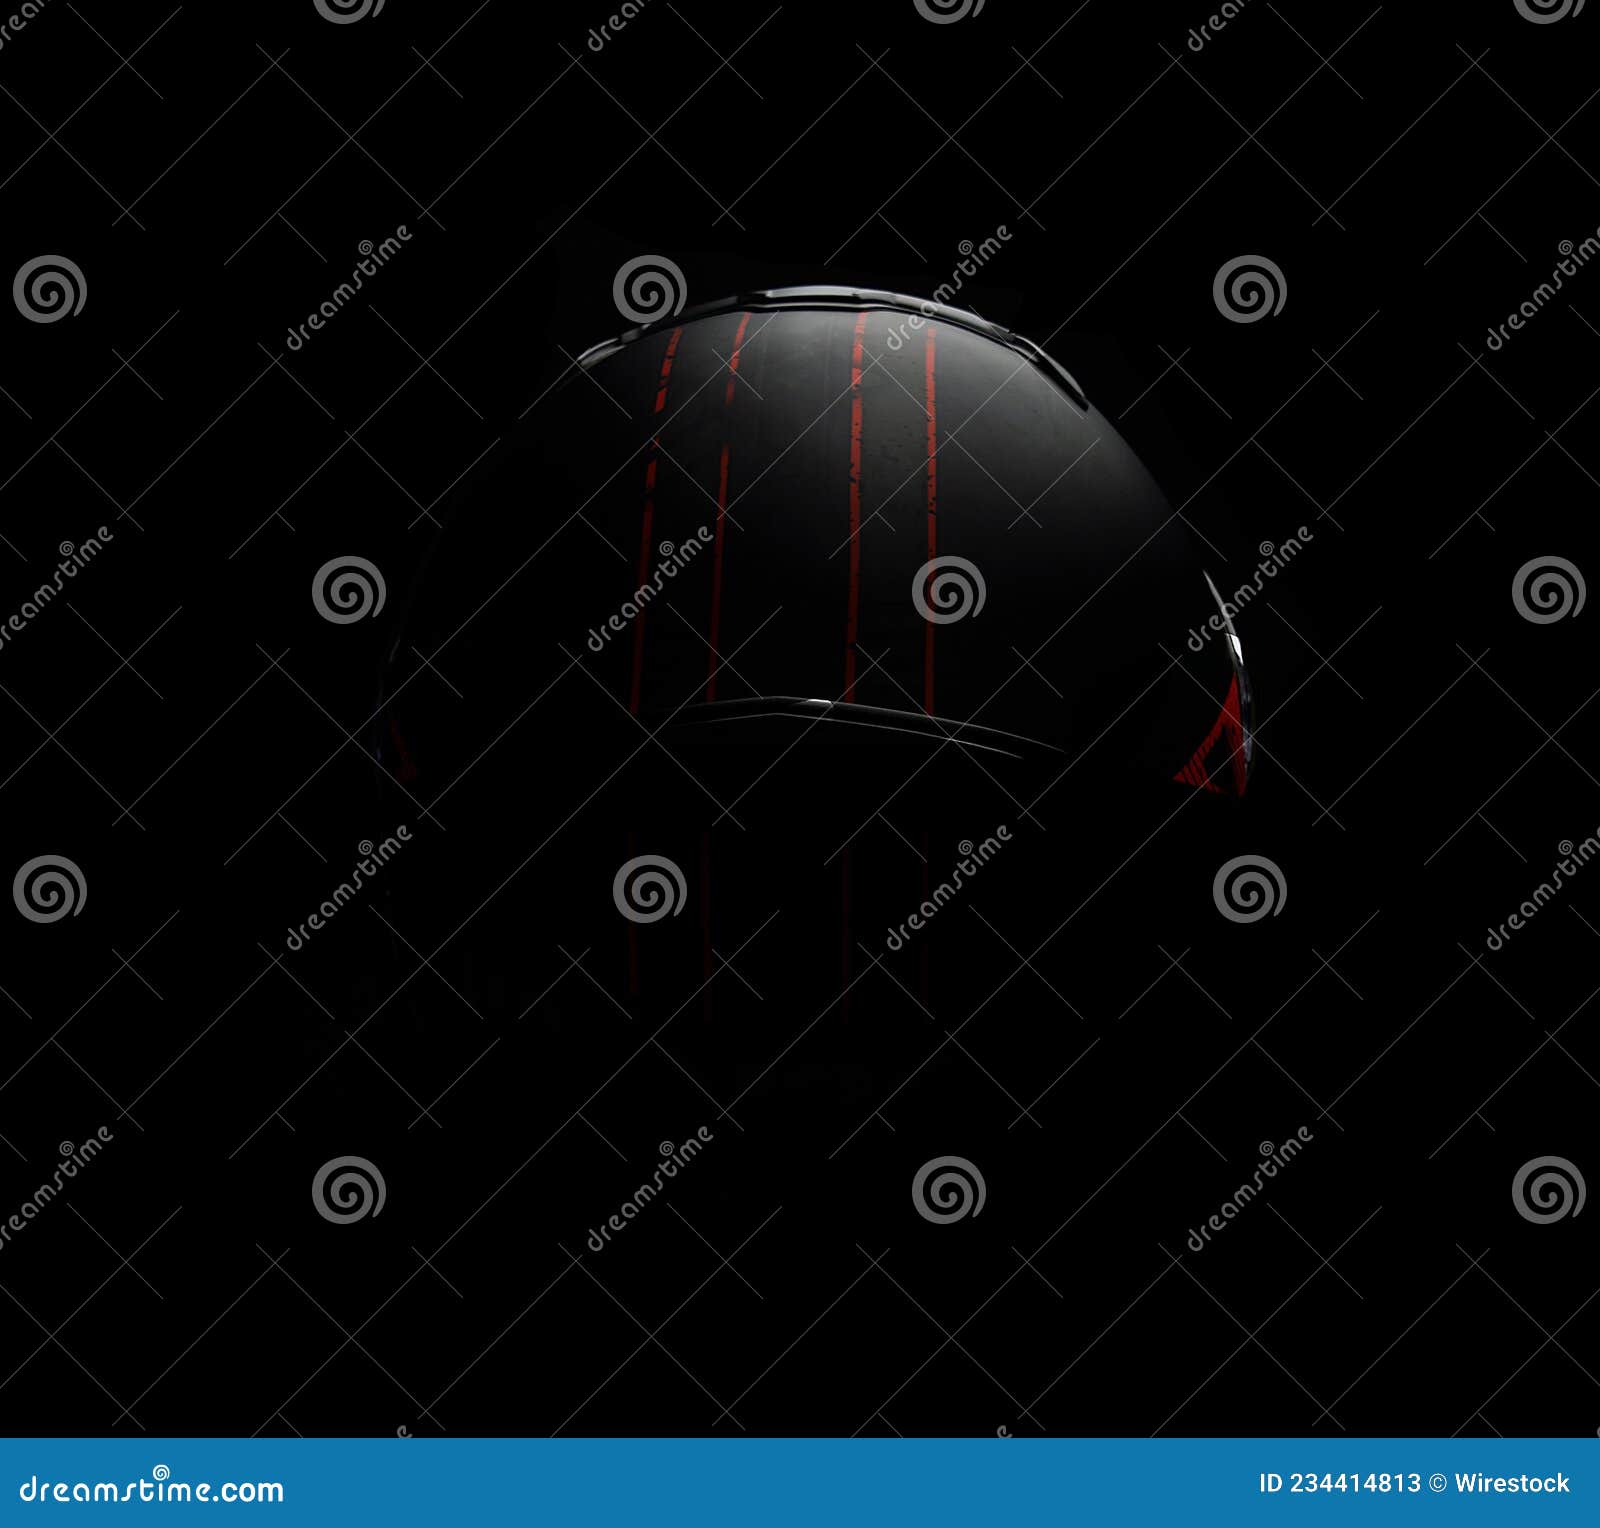 casco para moto a contraluz: elegancia